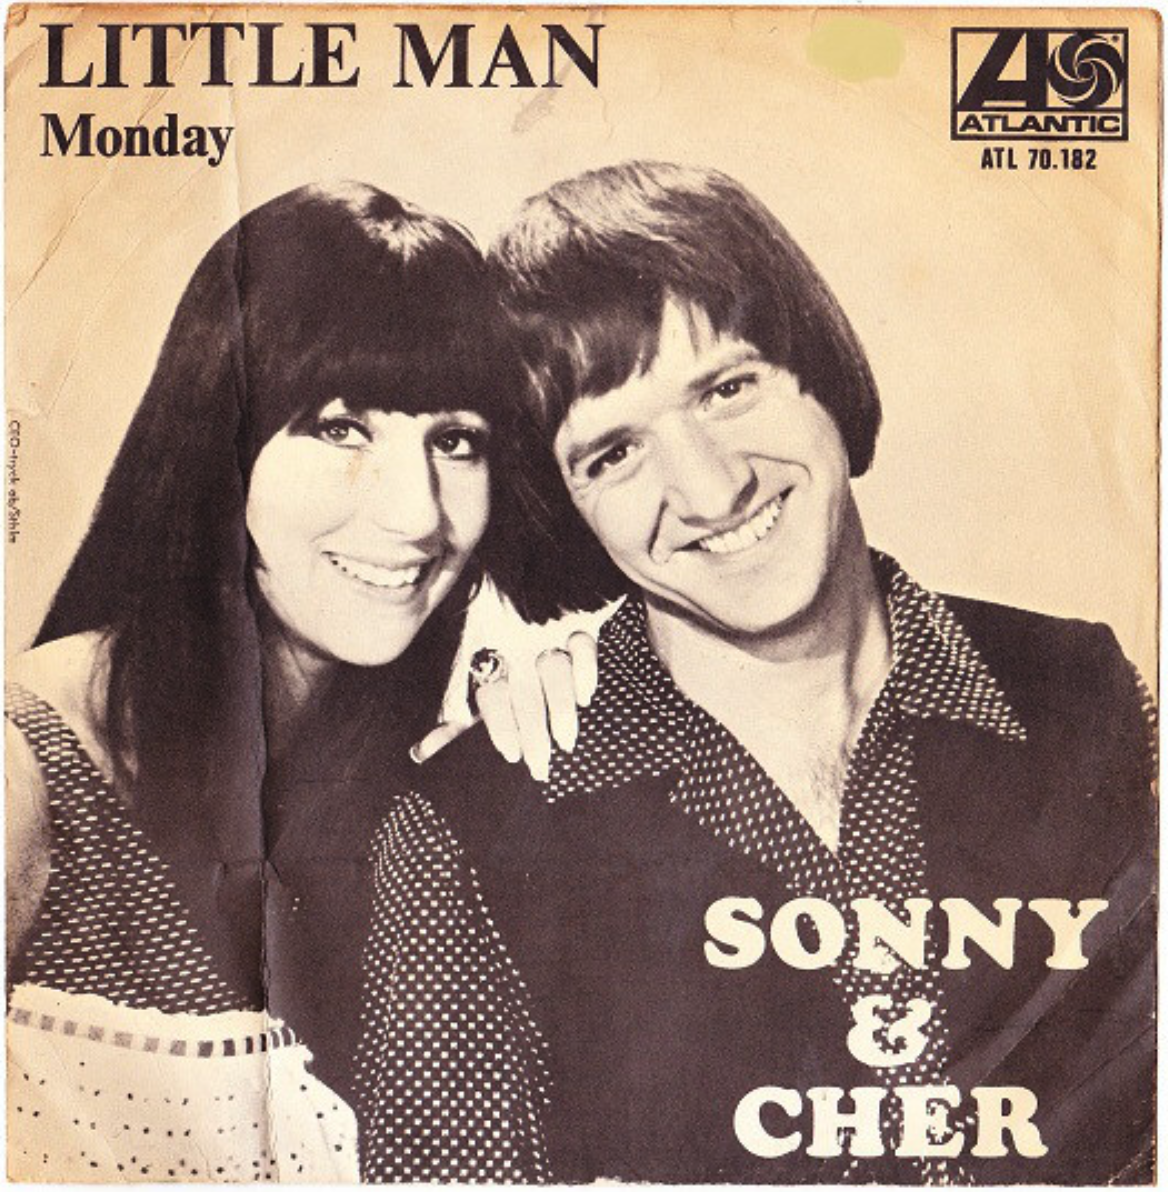 Sonny - cher - little man 1966г. "Сонни и Шер" ("Sonny & cher"). Cher little man 1966. Sonny cher 1966 года little man. Шер тексты песен